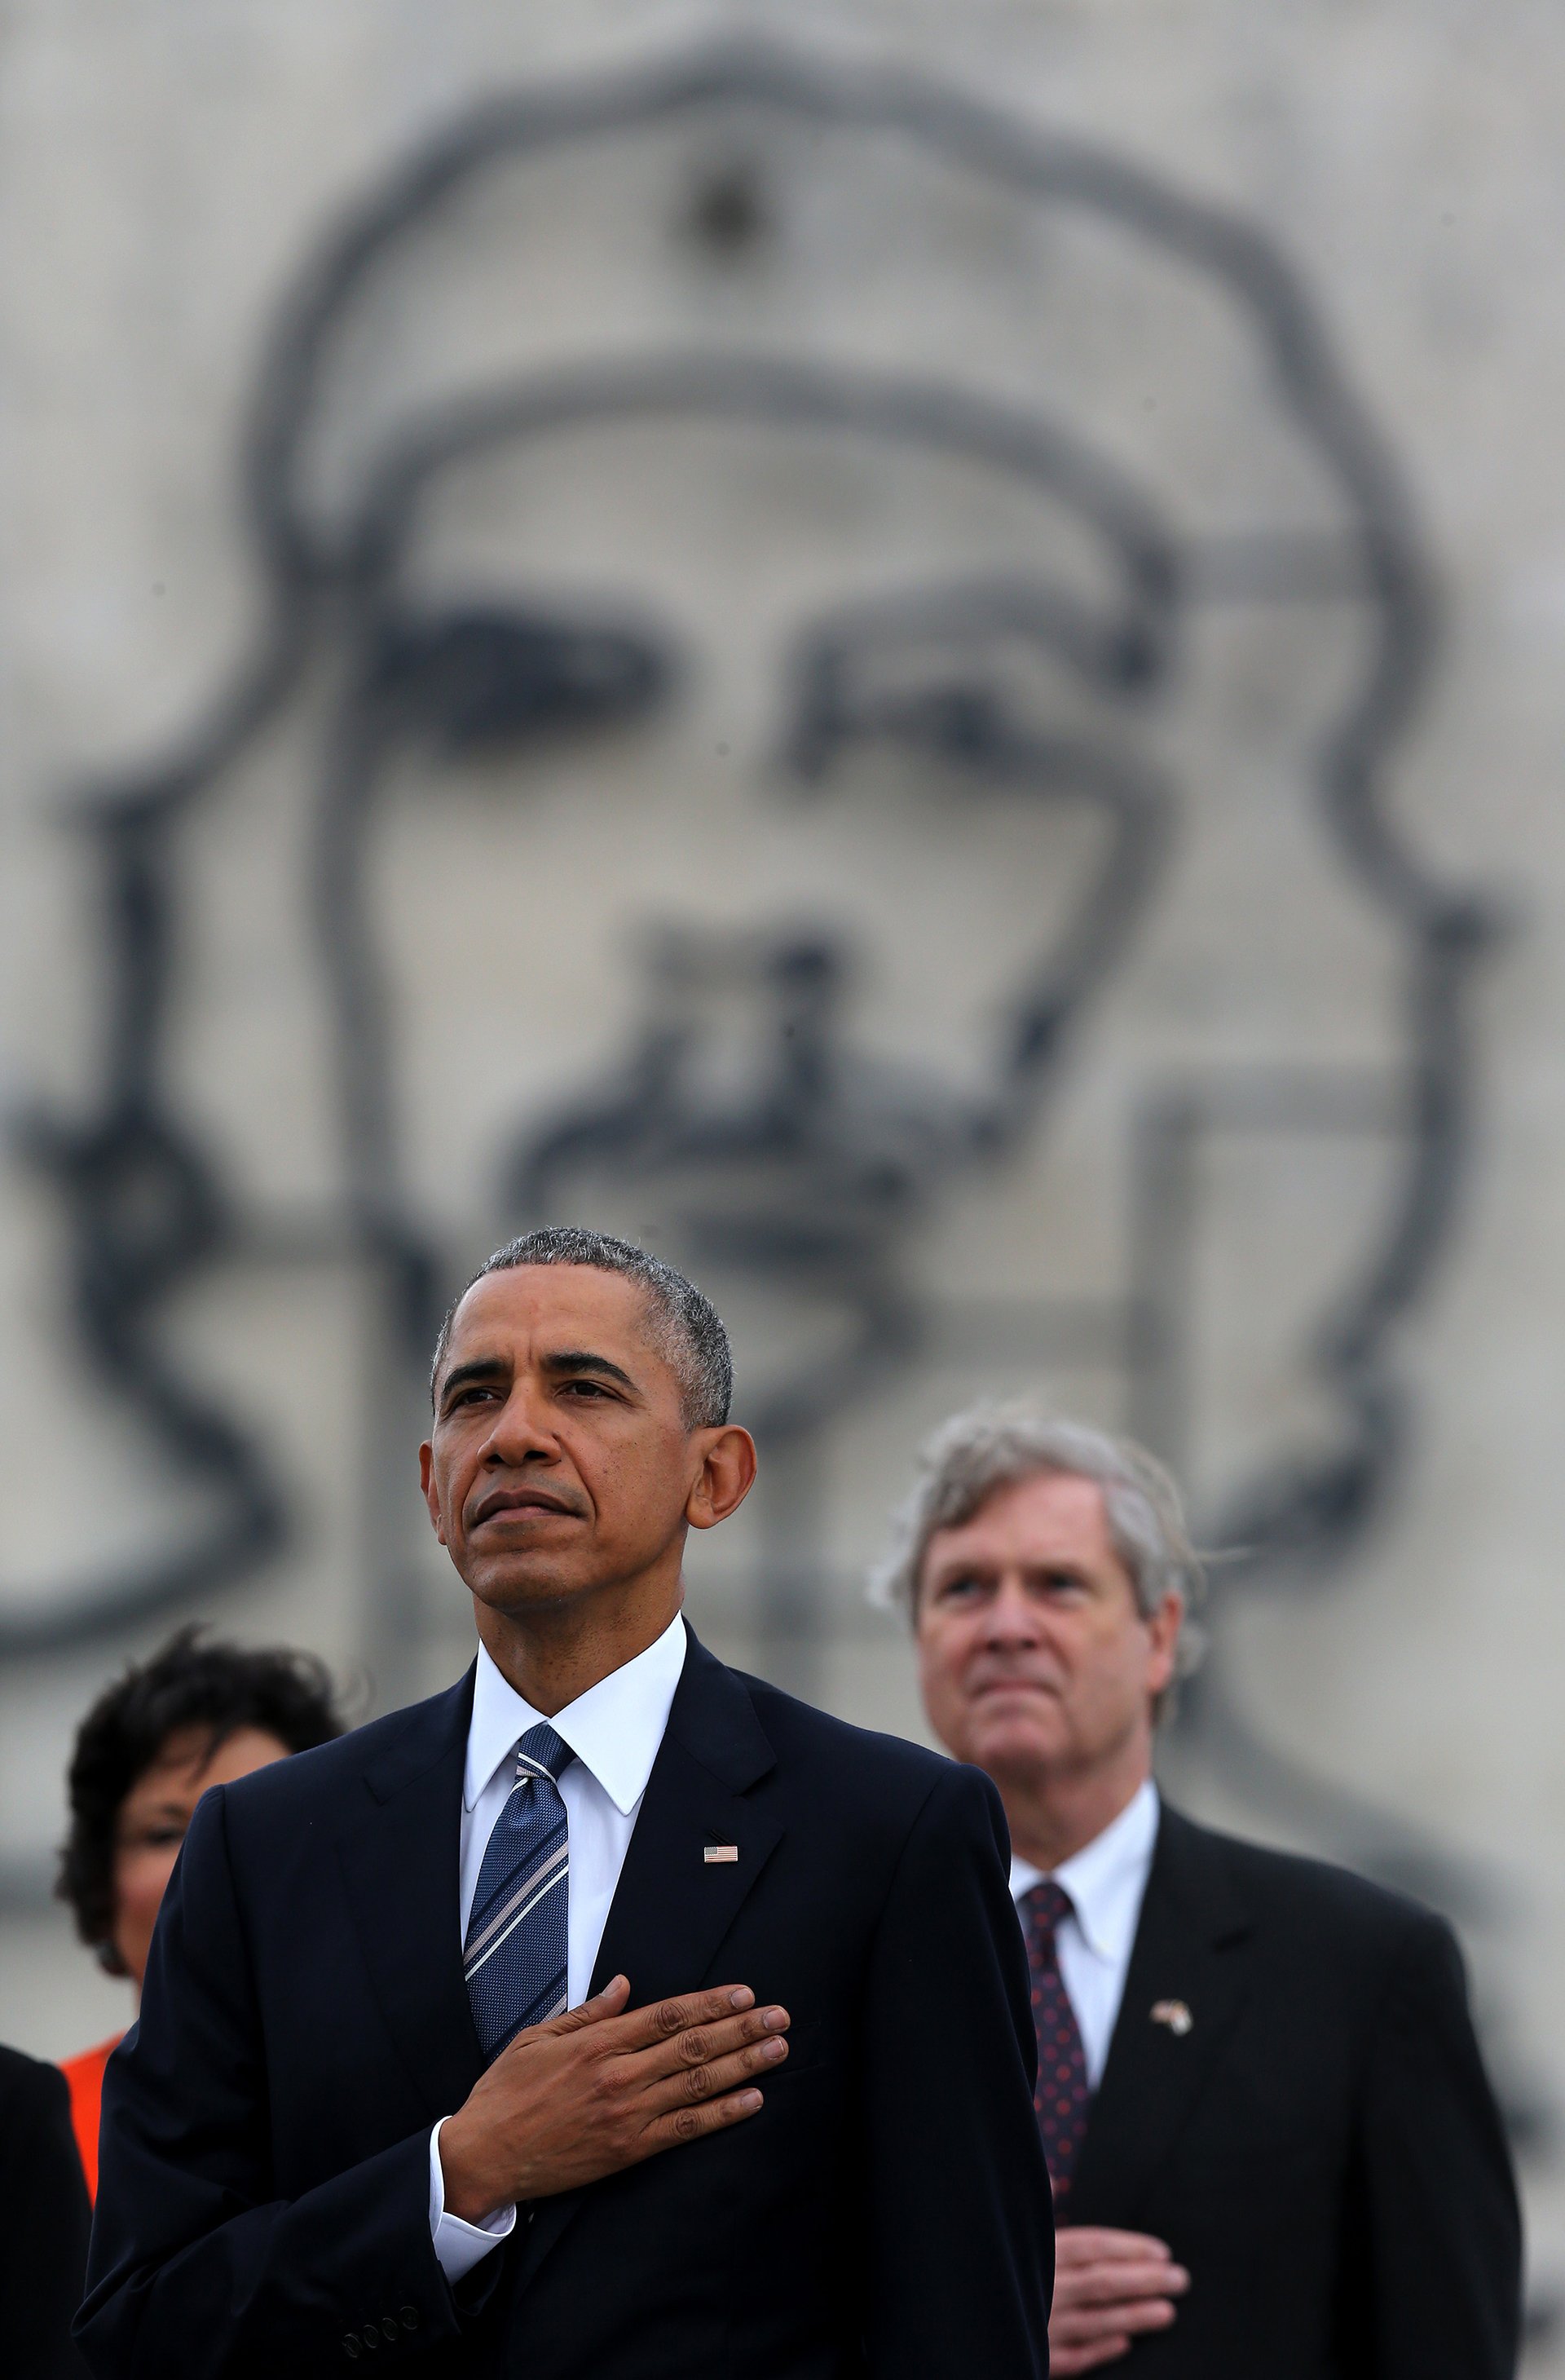 El Presidente Obama en la histórica Plaza de la Revolución, bajo la imagen del 'Che' Guevara, donde rindió un homenaje al poeta José Martí.